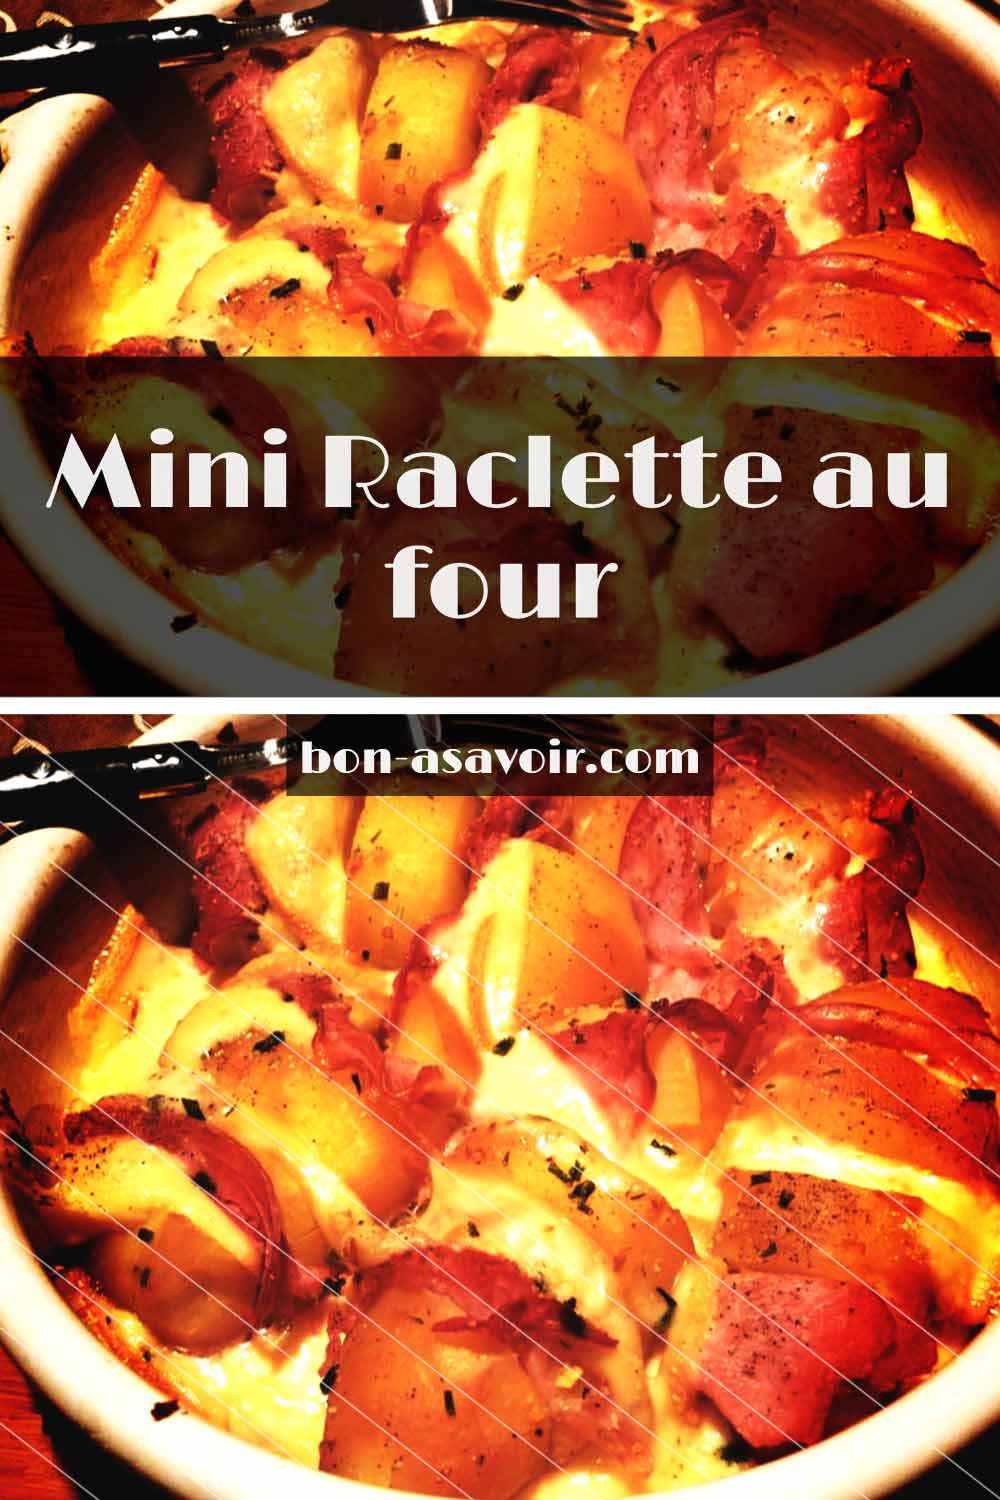 Mini Raclette au four